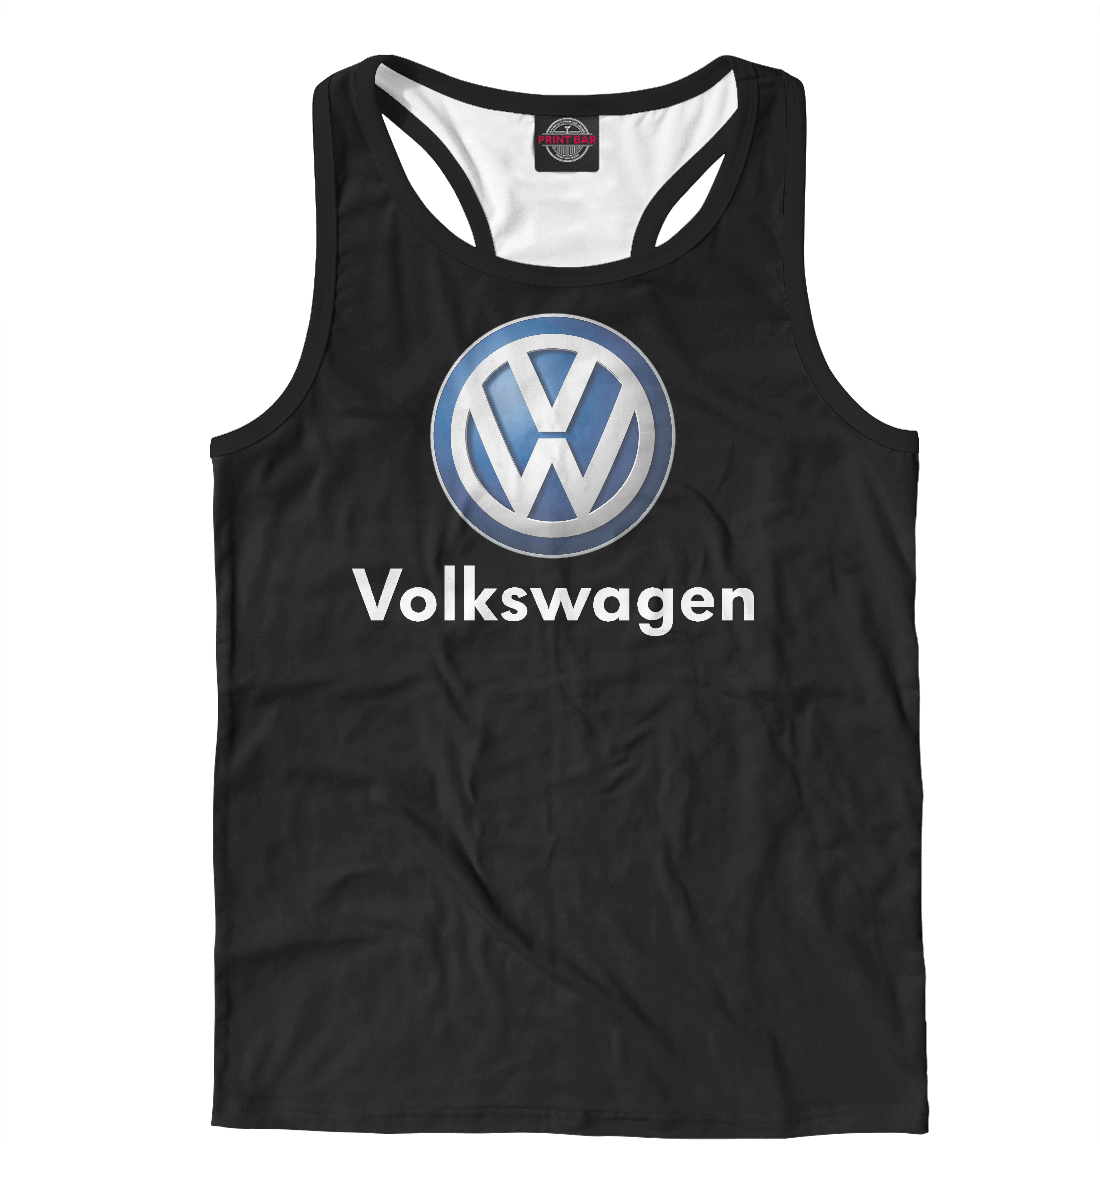 

Volkswagen